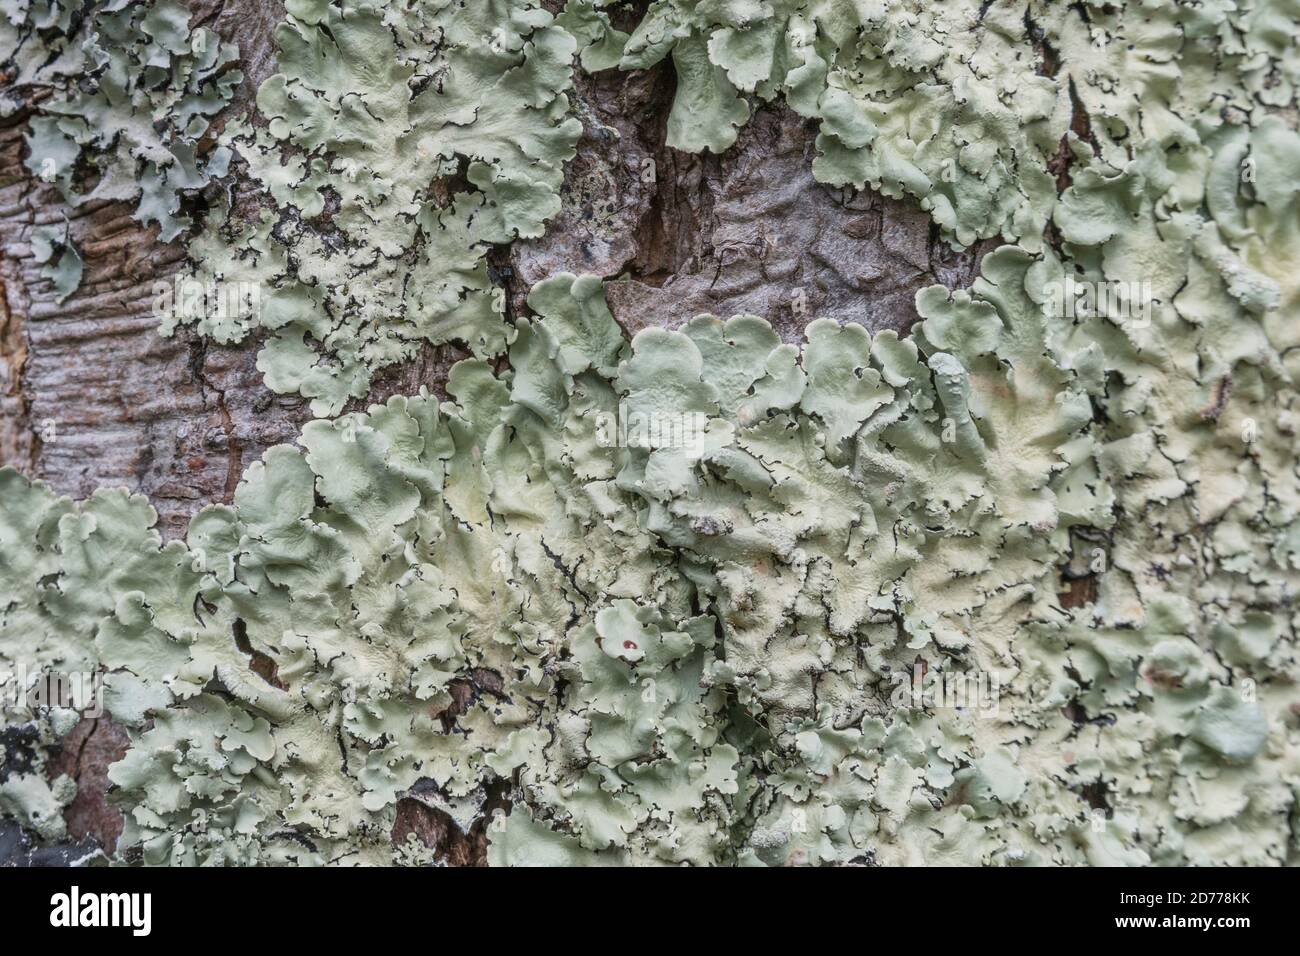 Superficie di tronco di albero coperto con licheni fogliosi verde pallido che crescono sulla corteccia. Licheni inglesi, licheni piatti lievitati, ricoperti di licheni. Foto Stock